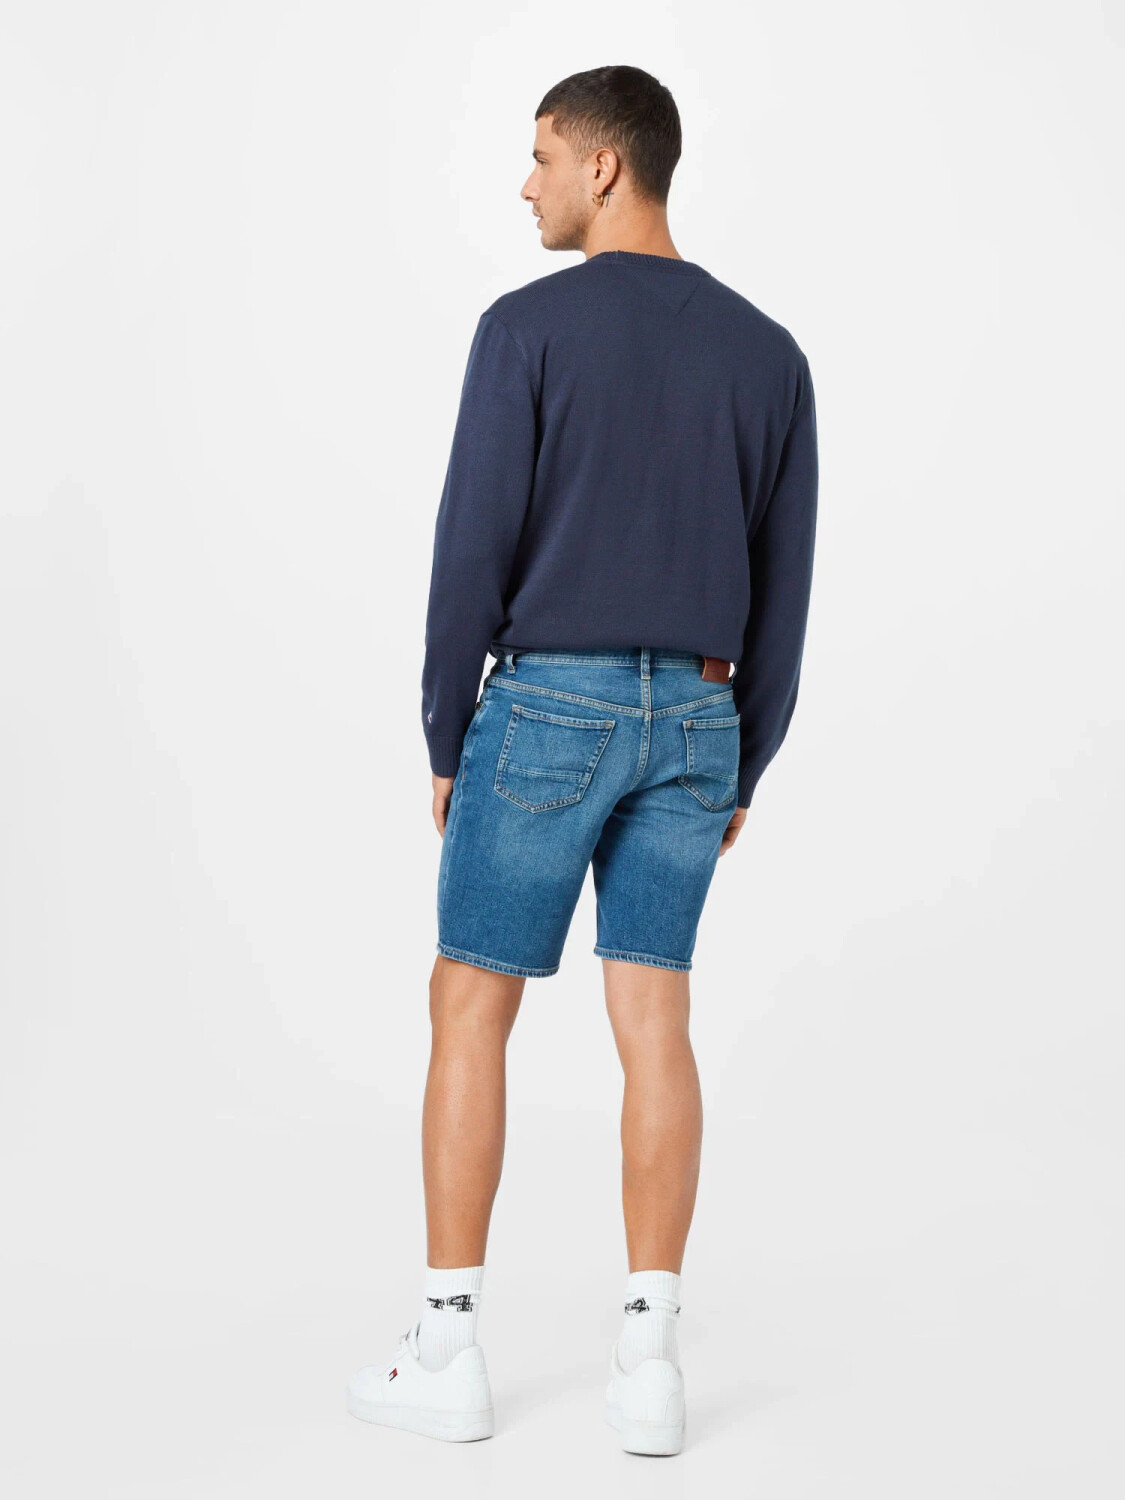 Tommy Hilfiger Brooklyn Faded Regular Shorts (MW0MW18035) boston indigo ab  44,90 € | Preisvergleich bei